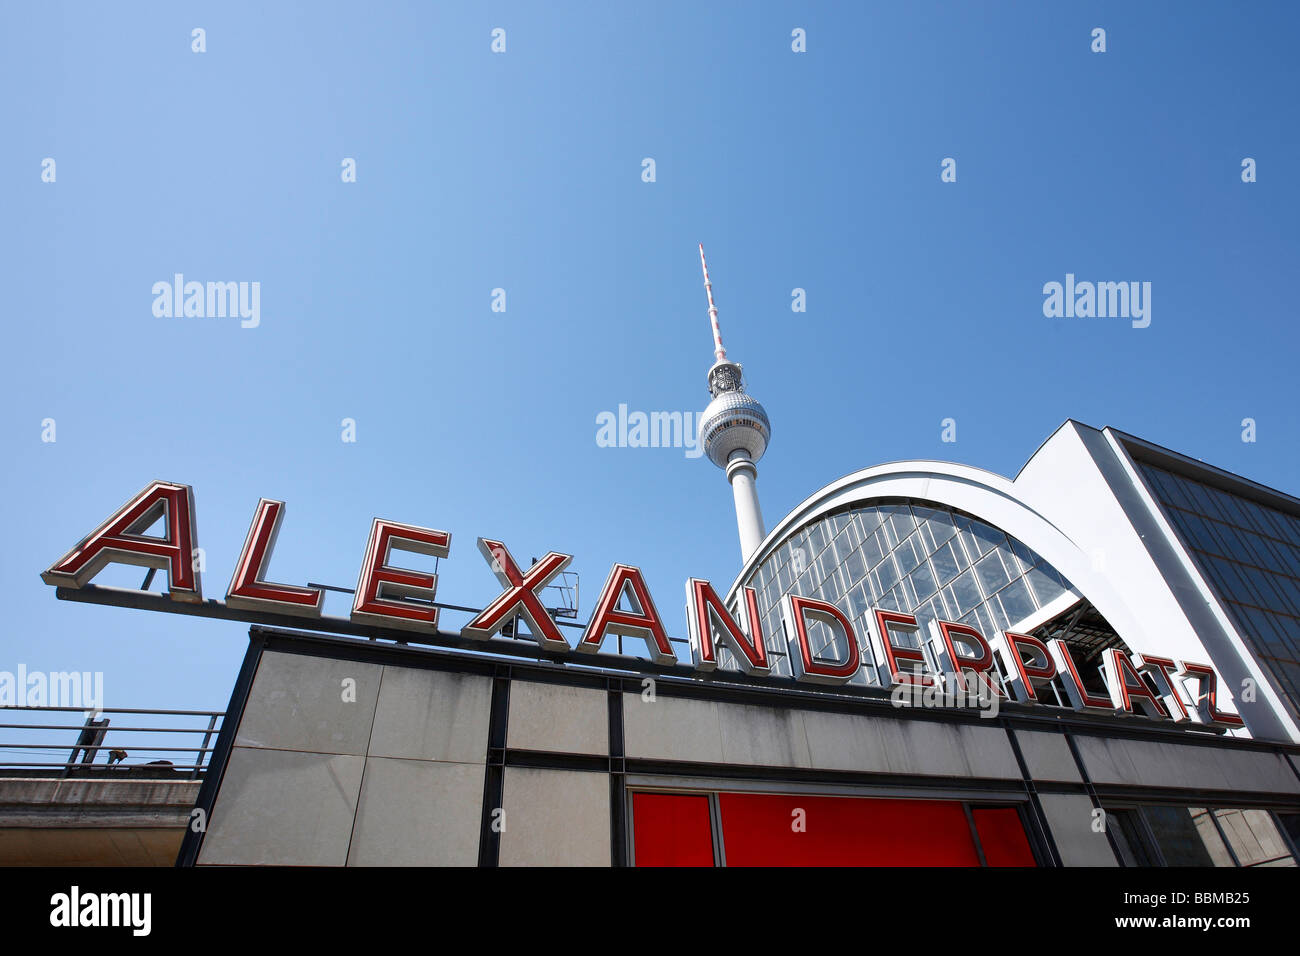 Alexanderplatz Bahnhof und Fernsehturm Fernsehturm, Berlin, Deutschland, Europa Stockfoto